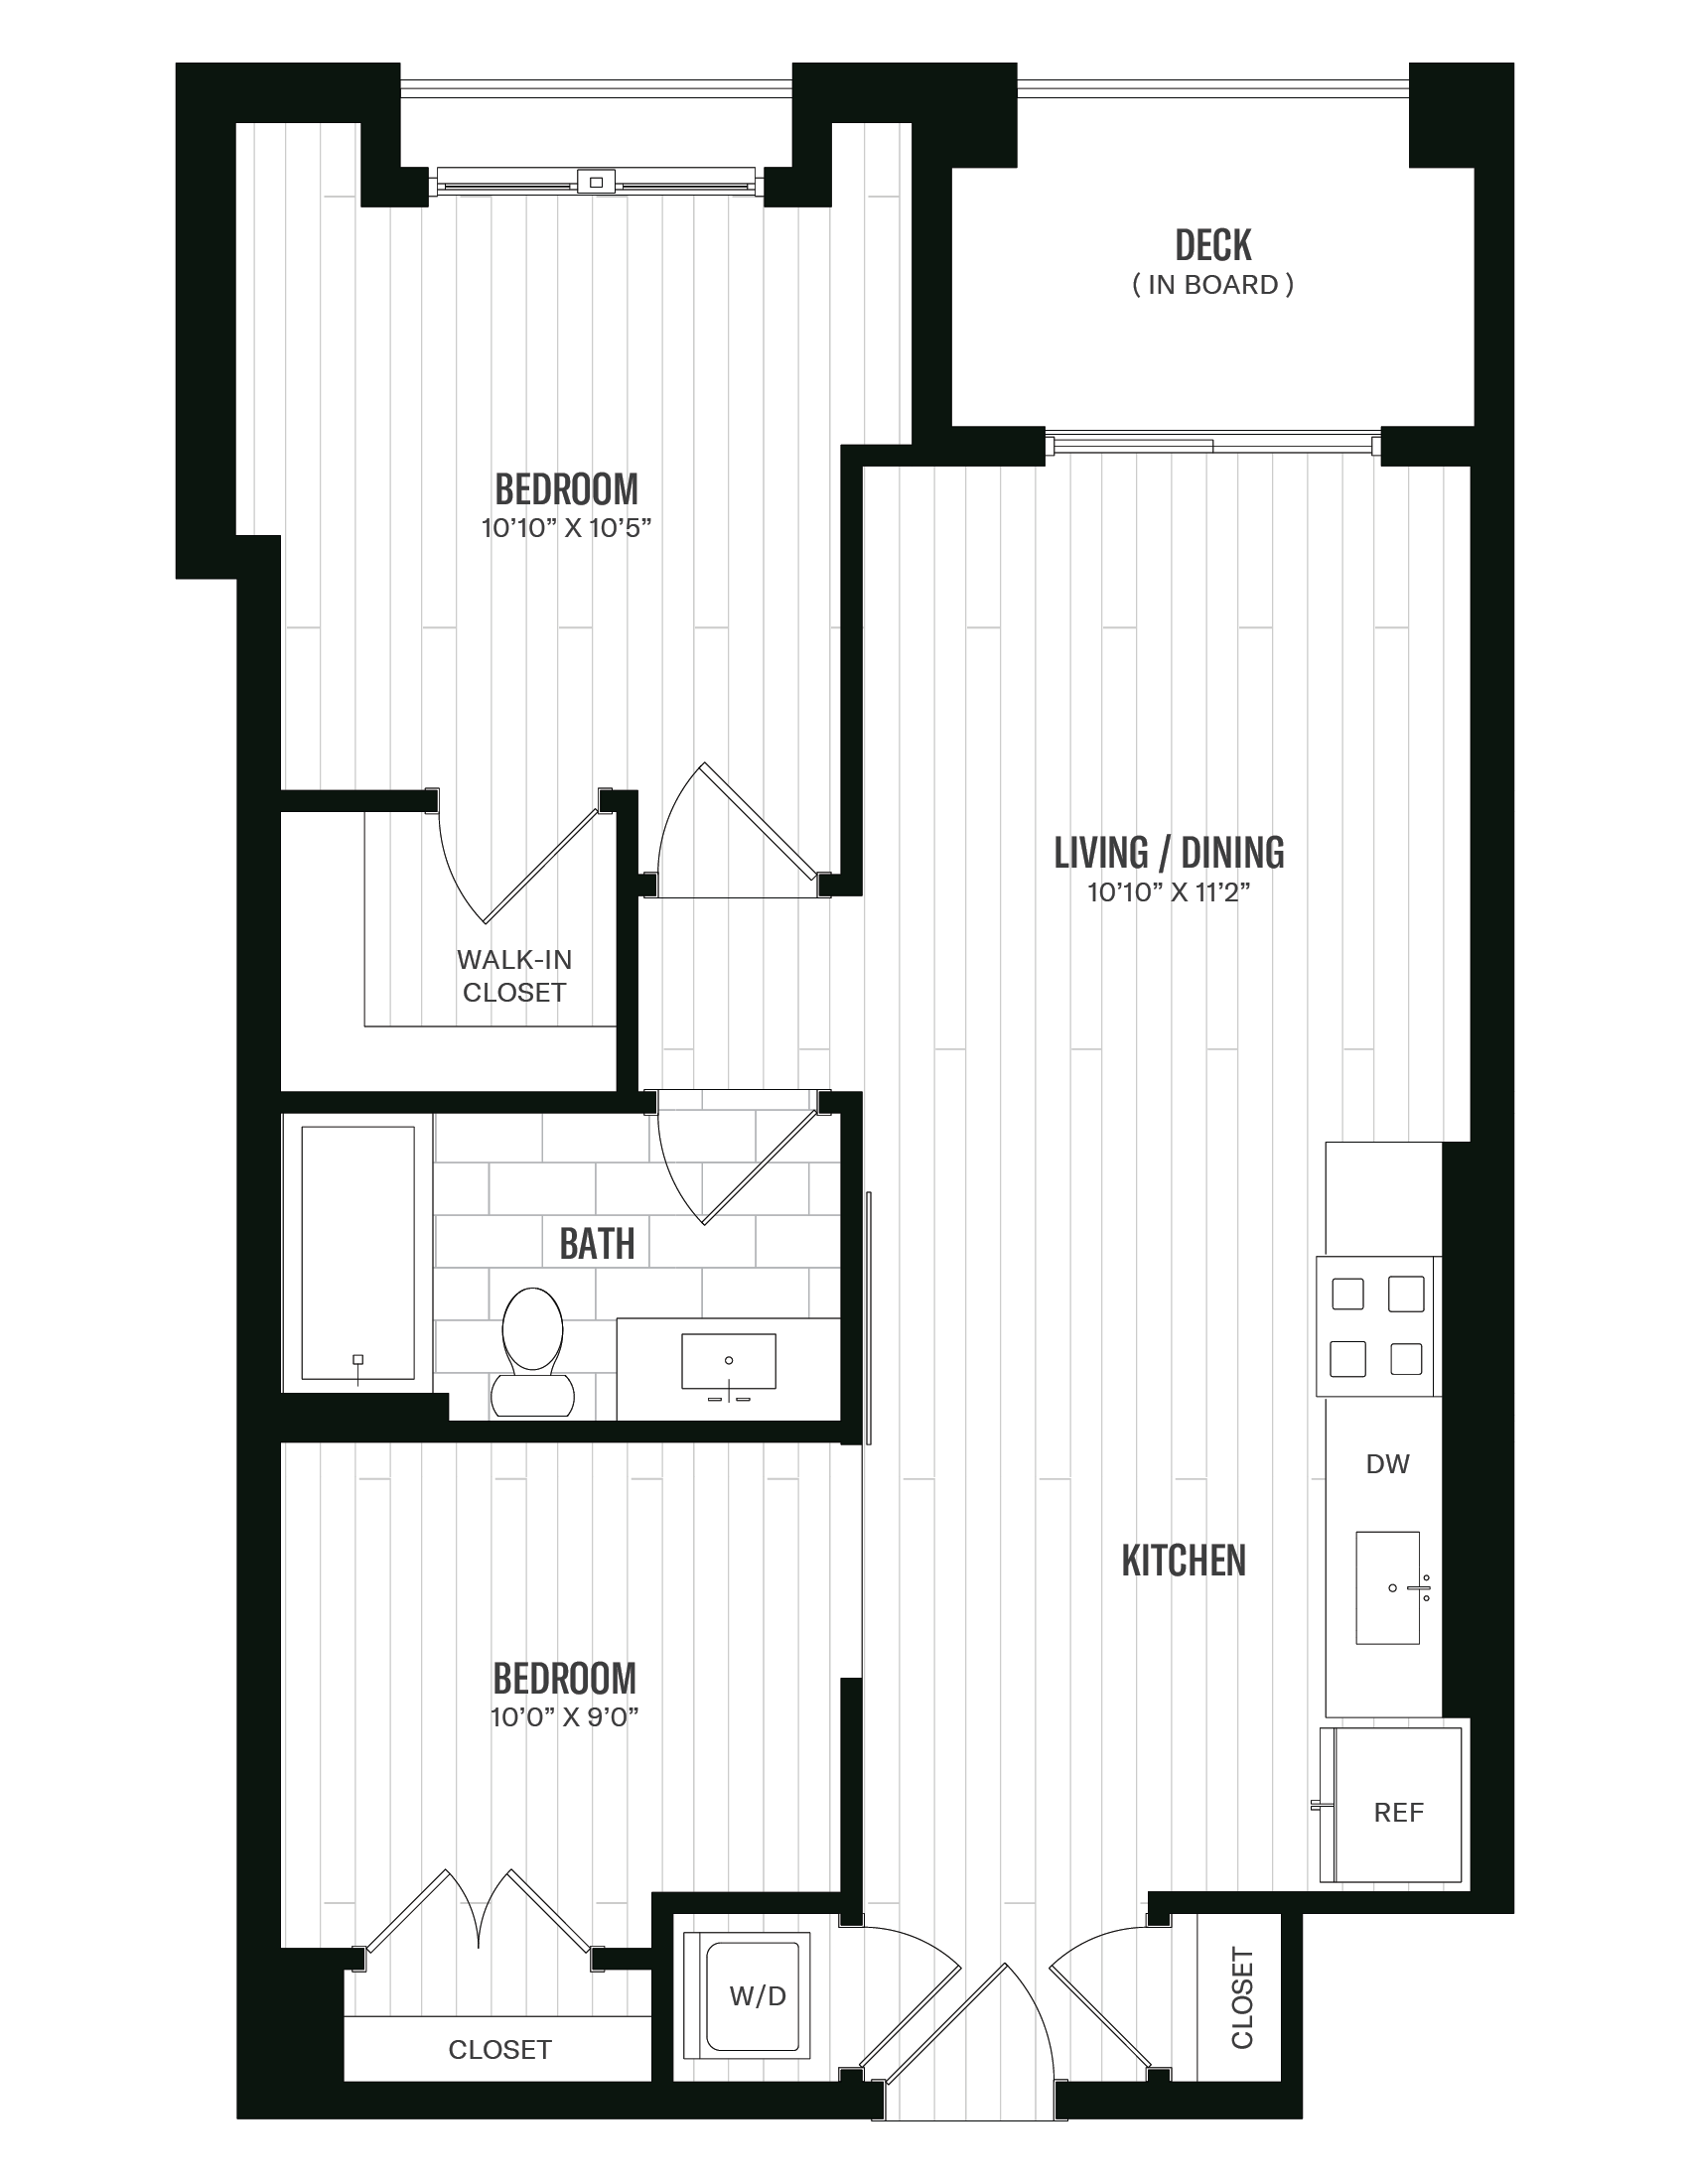 Floorplan image of unit 422